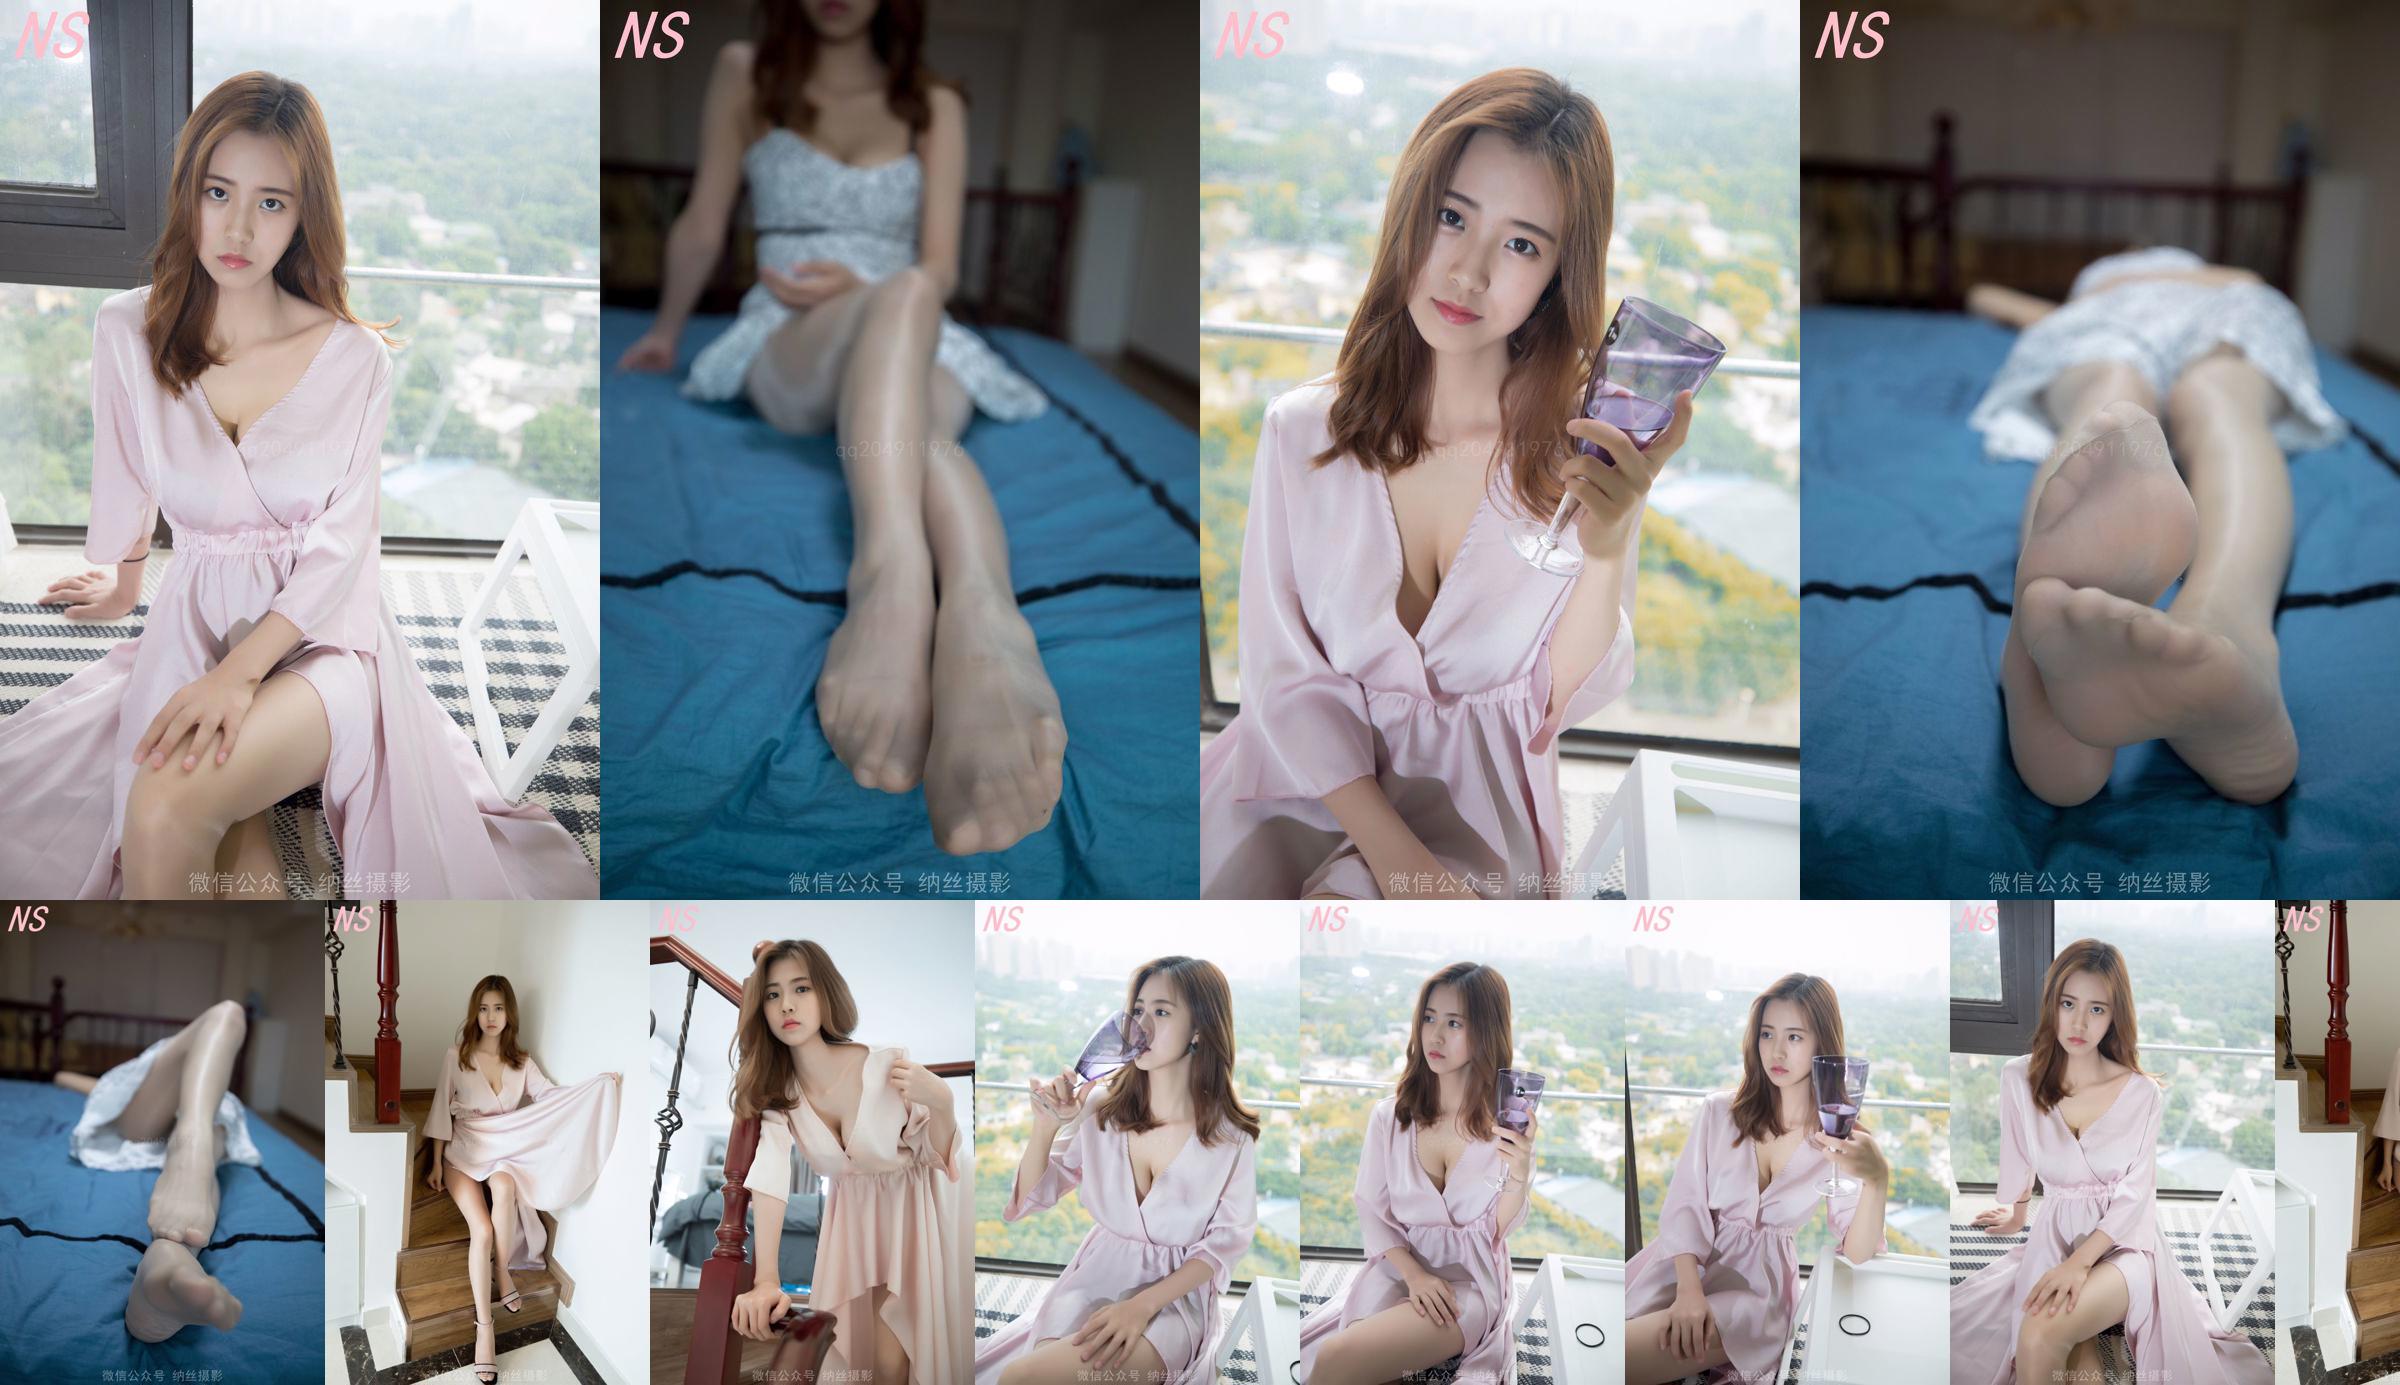 Beauty anchor Hanshuang "The Temptation of Pajamas" [Nasi Photography] No.07afe0 Page 4